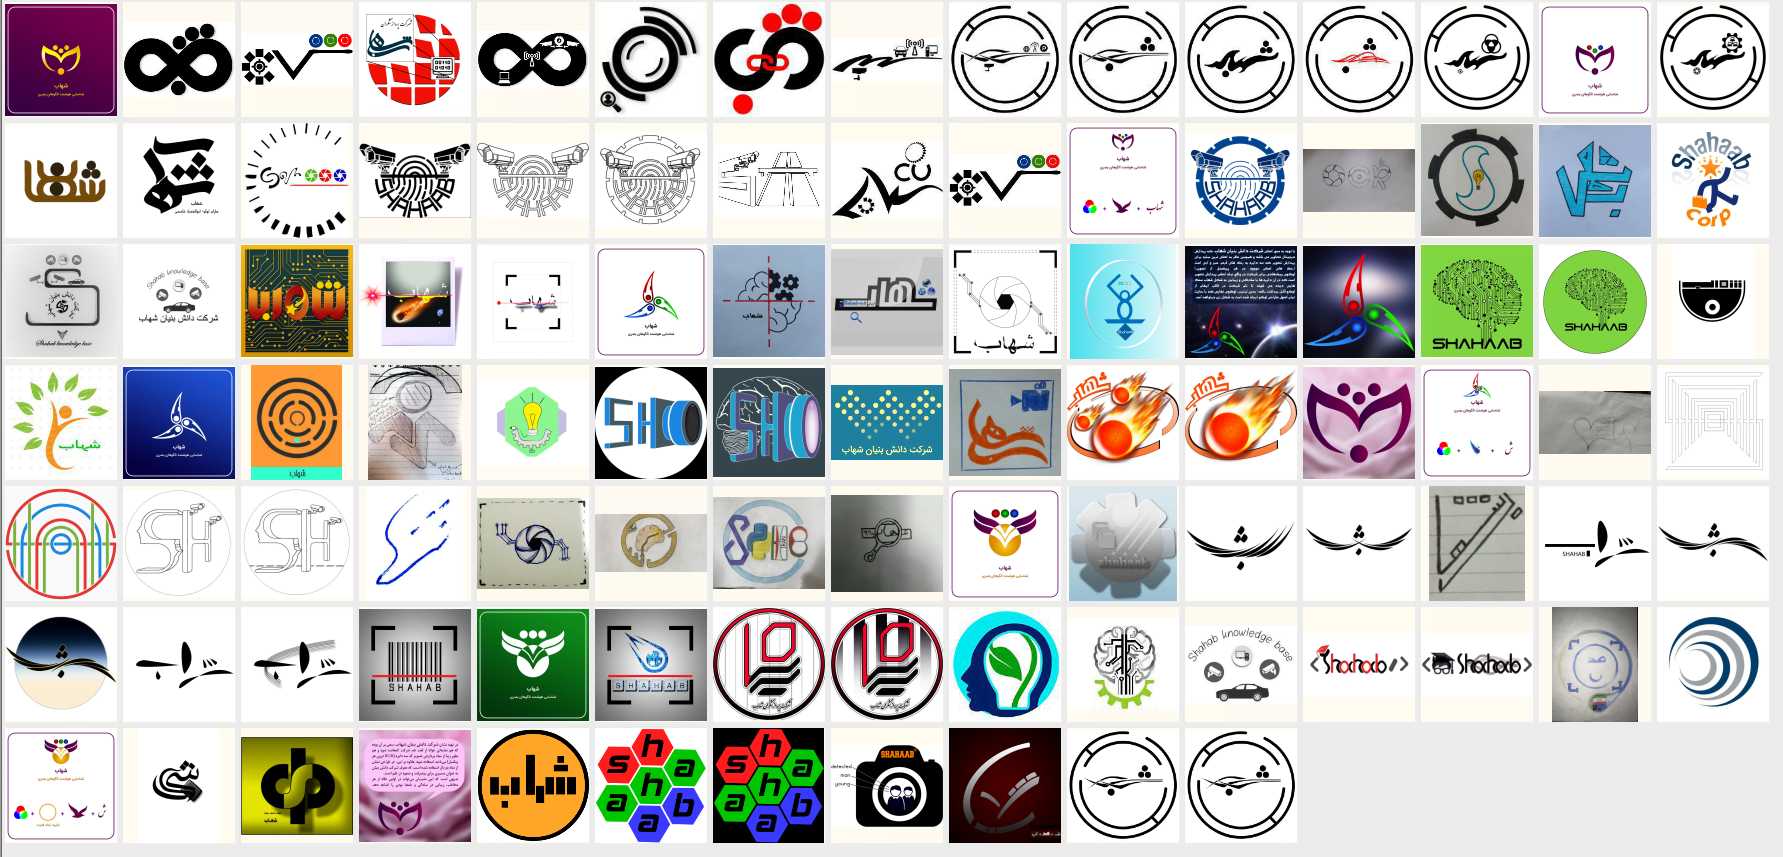 لوگوهای ارسالی به مسابقه طراحی لوگو شرکت شهاب